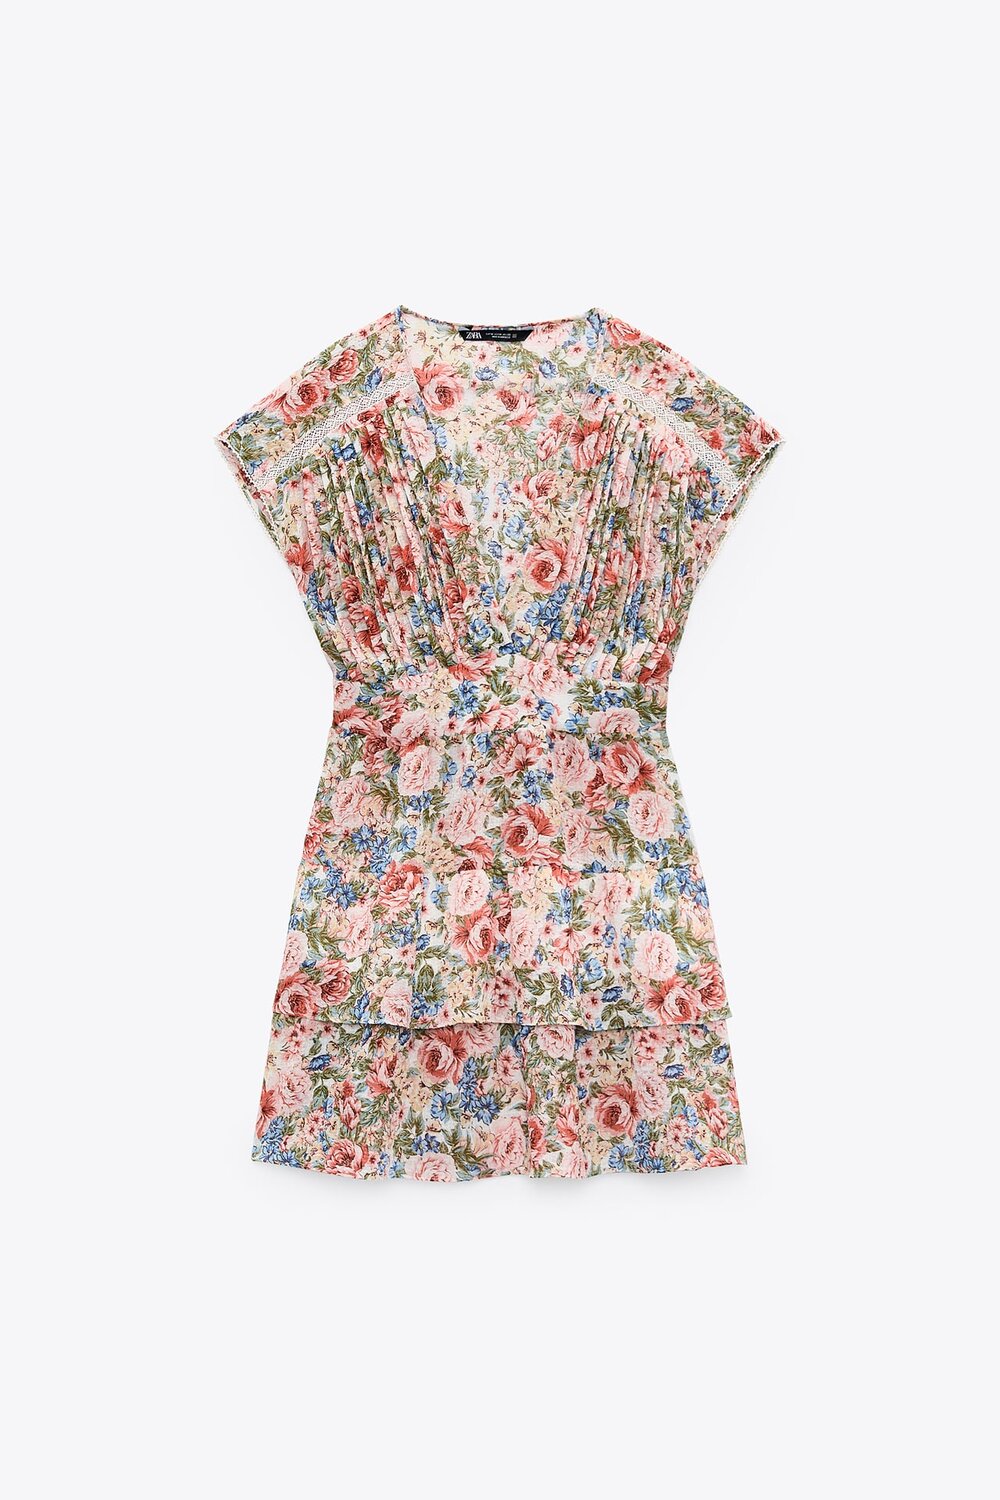 Zara Floral Print Mini Dress in Multicolor — UFO No More